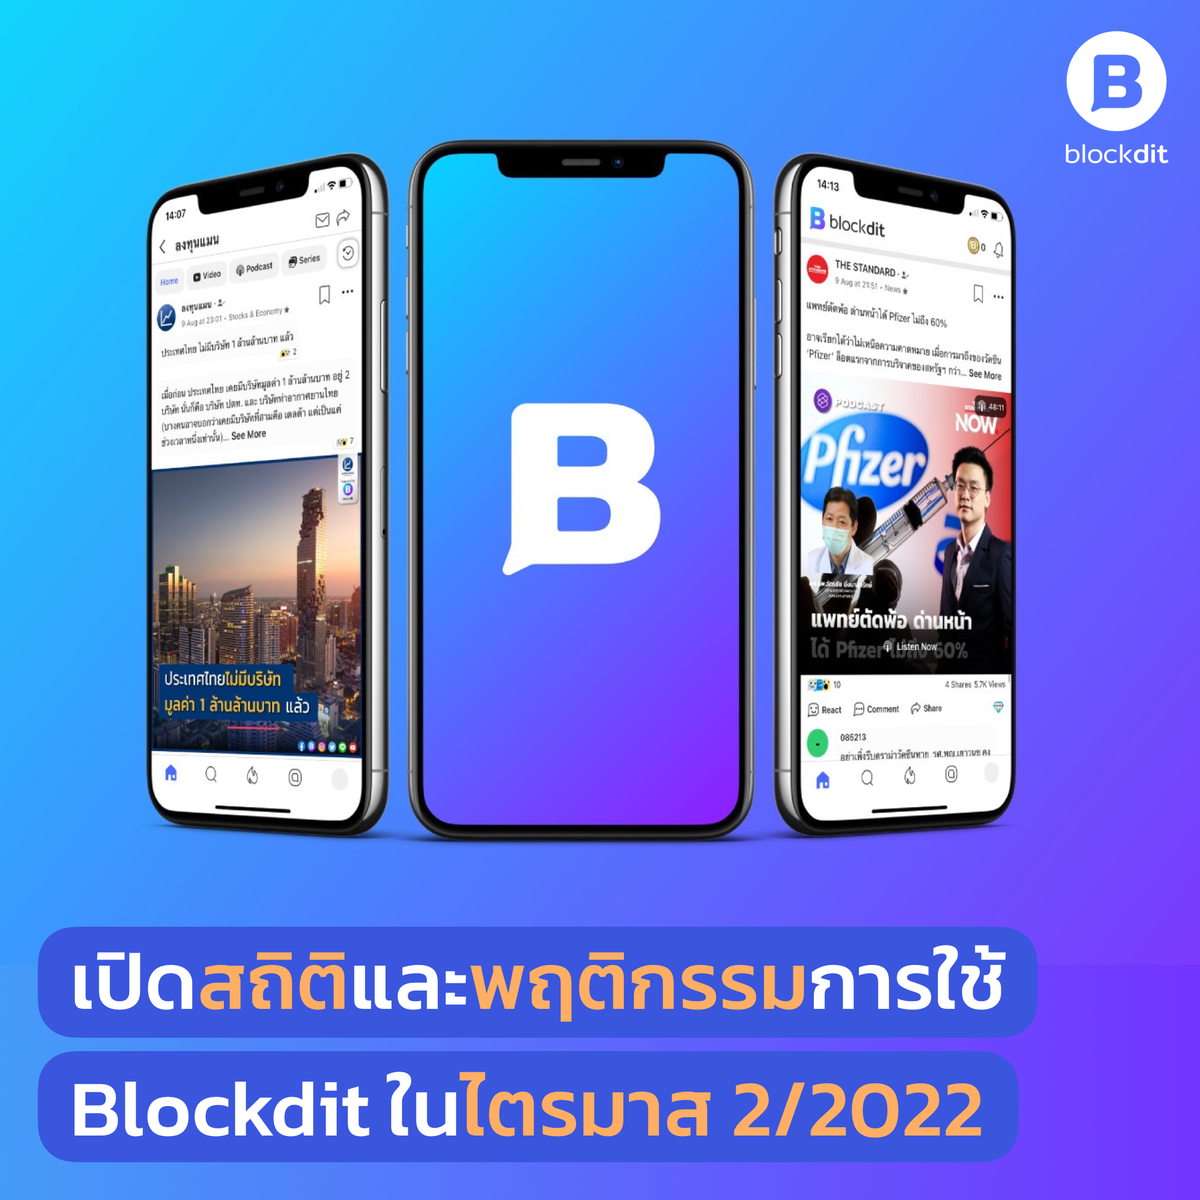 เปิดสถิติและพฤติกรรมการใช้ Blockdit ในไตรมาส 2/2022 คนไทยมองหาแพลตฟอร์มใหม่เพื่อรับมือความเสี่ยงถูกลด